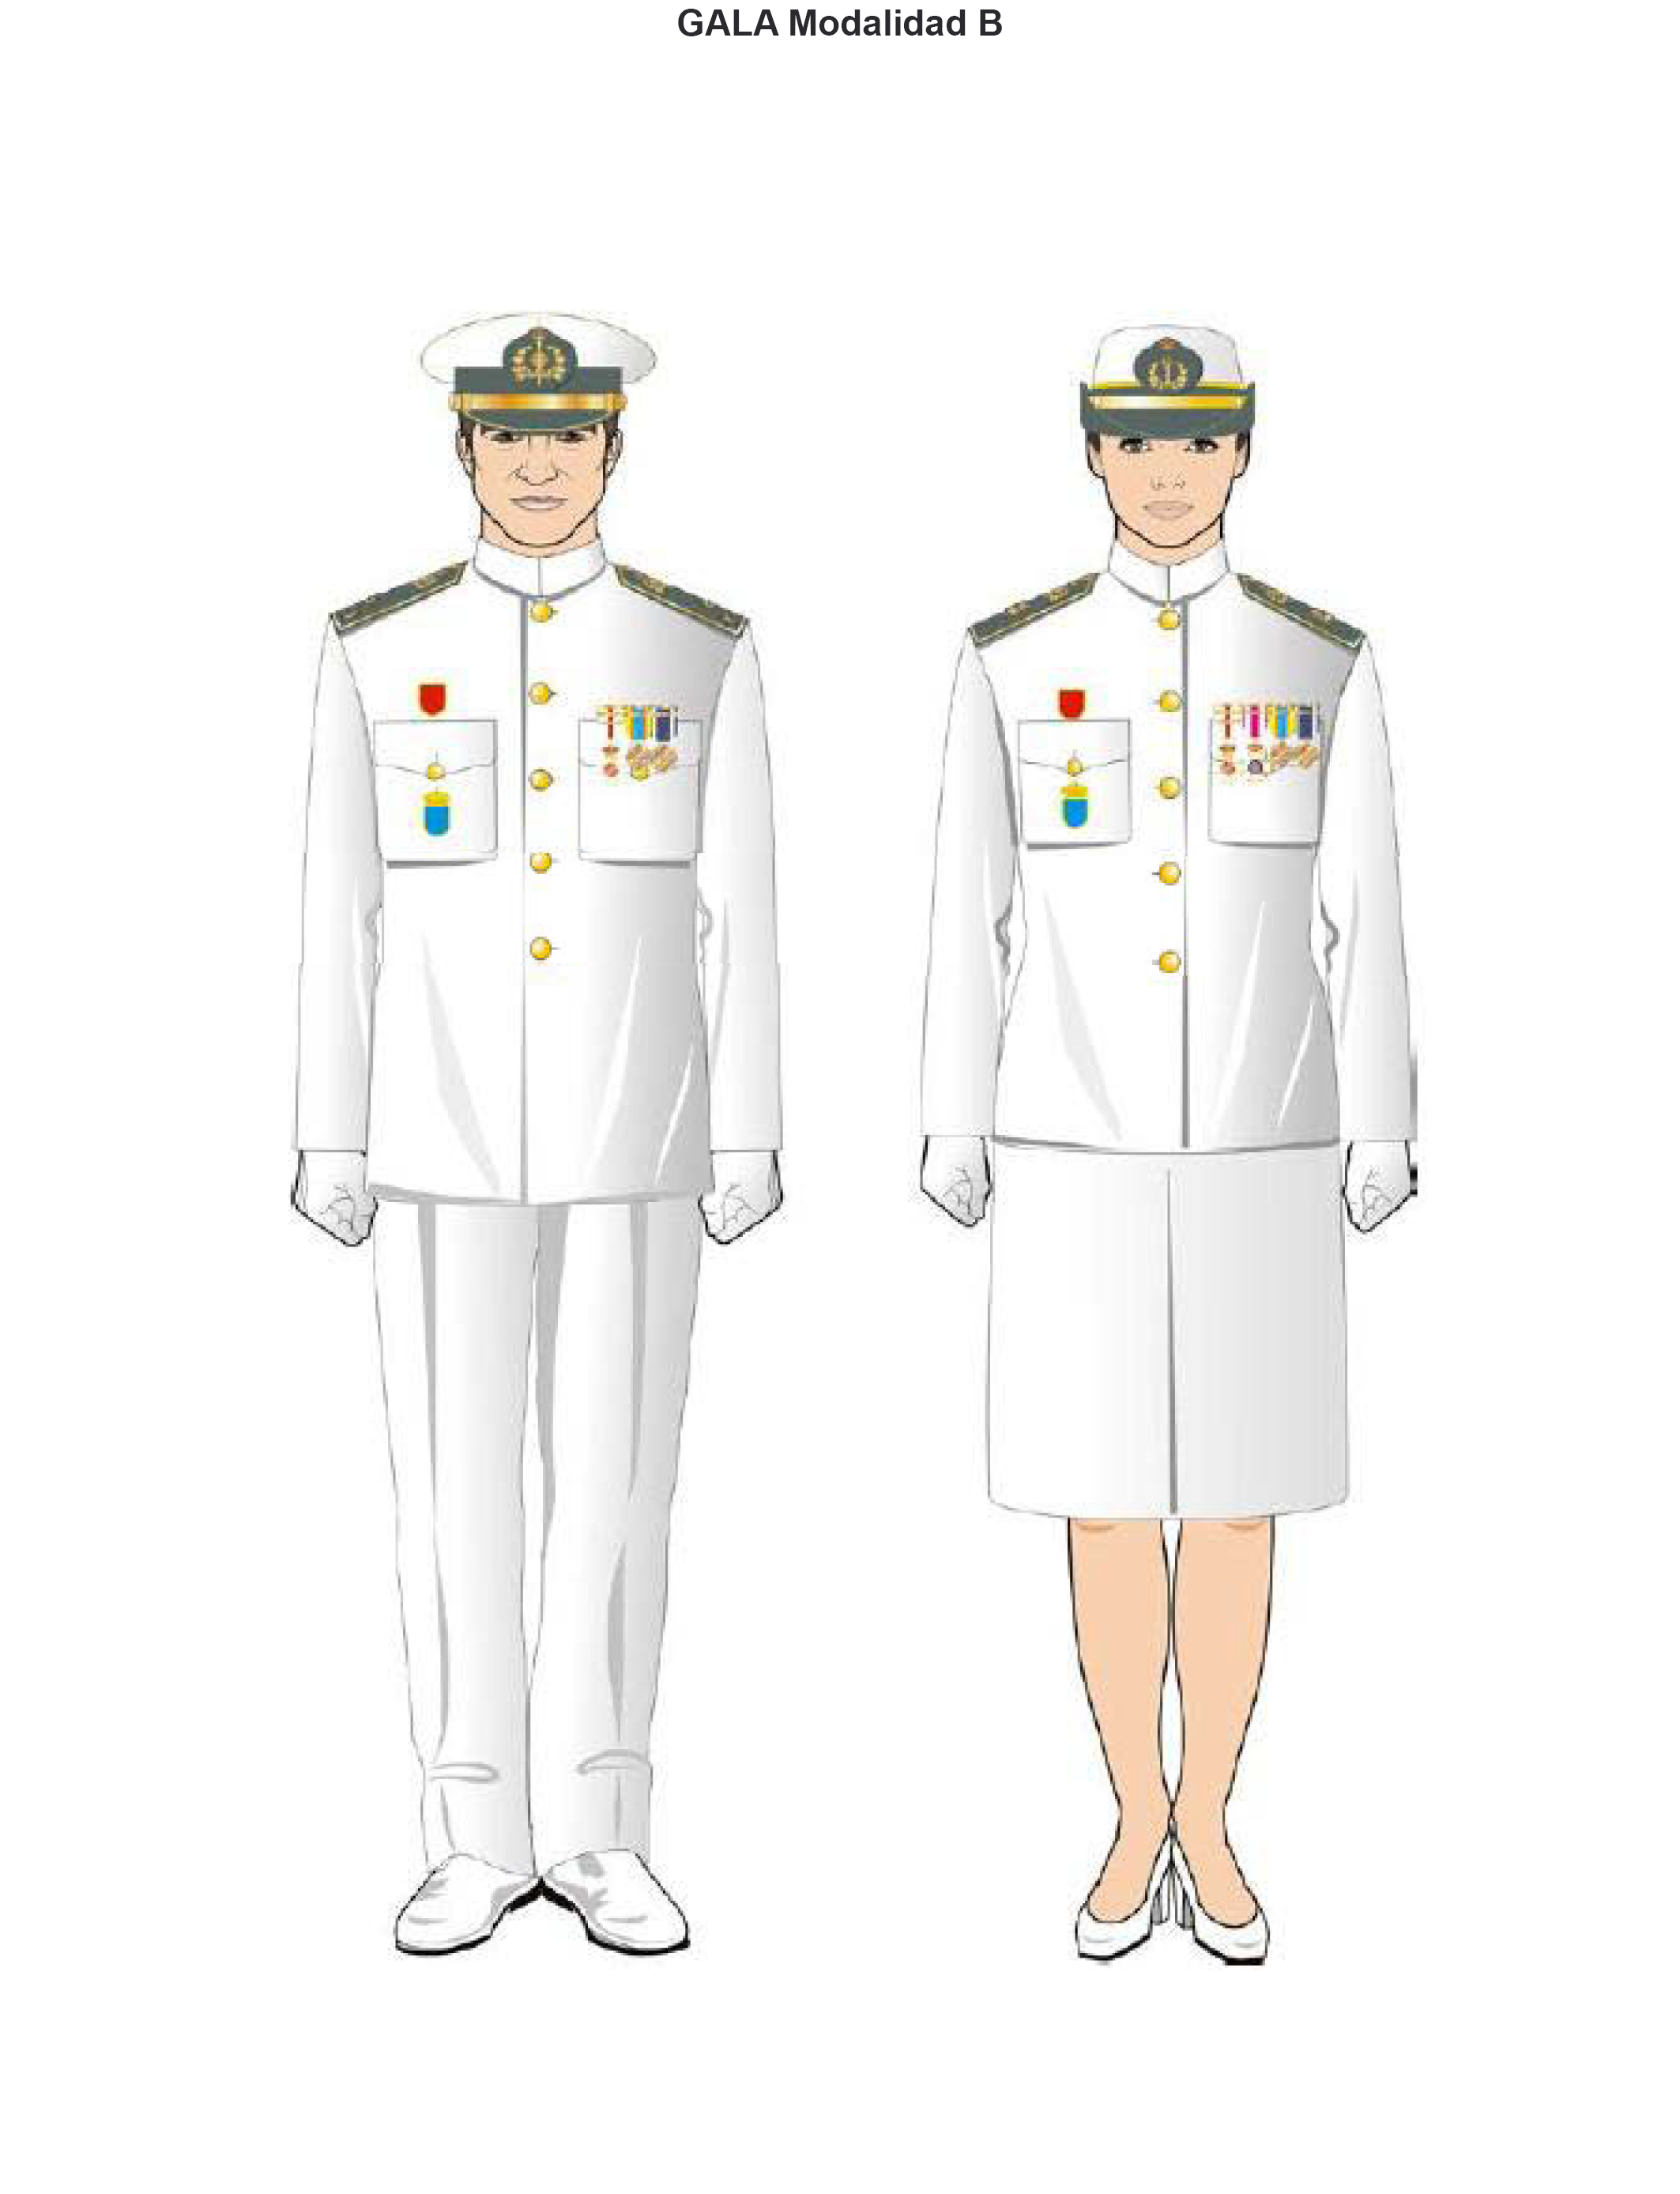 BOE-A-2016-10303 Orden DEF/1756/2016, de 28 de octubre, la que se aprueban las normas de uniformidad de las Fuerzas Armadas.